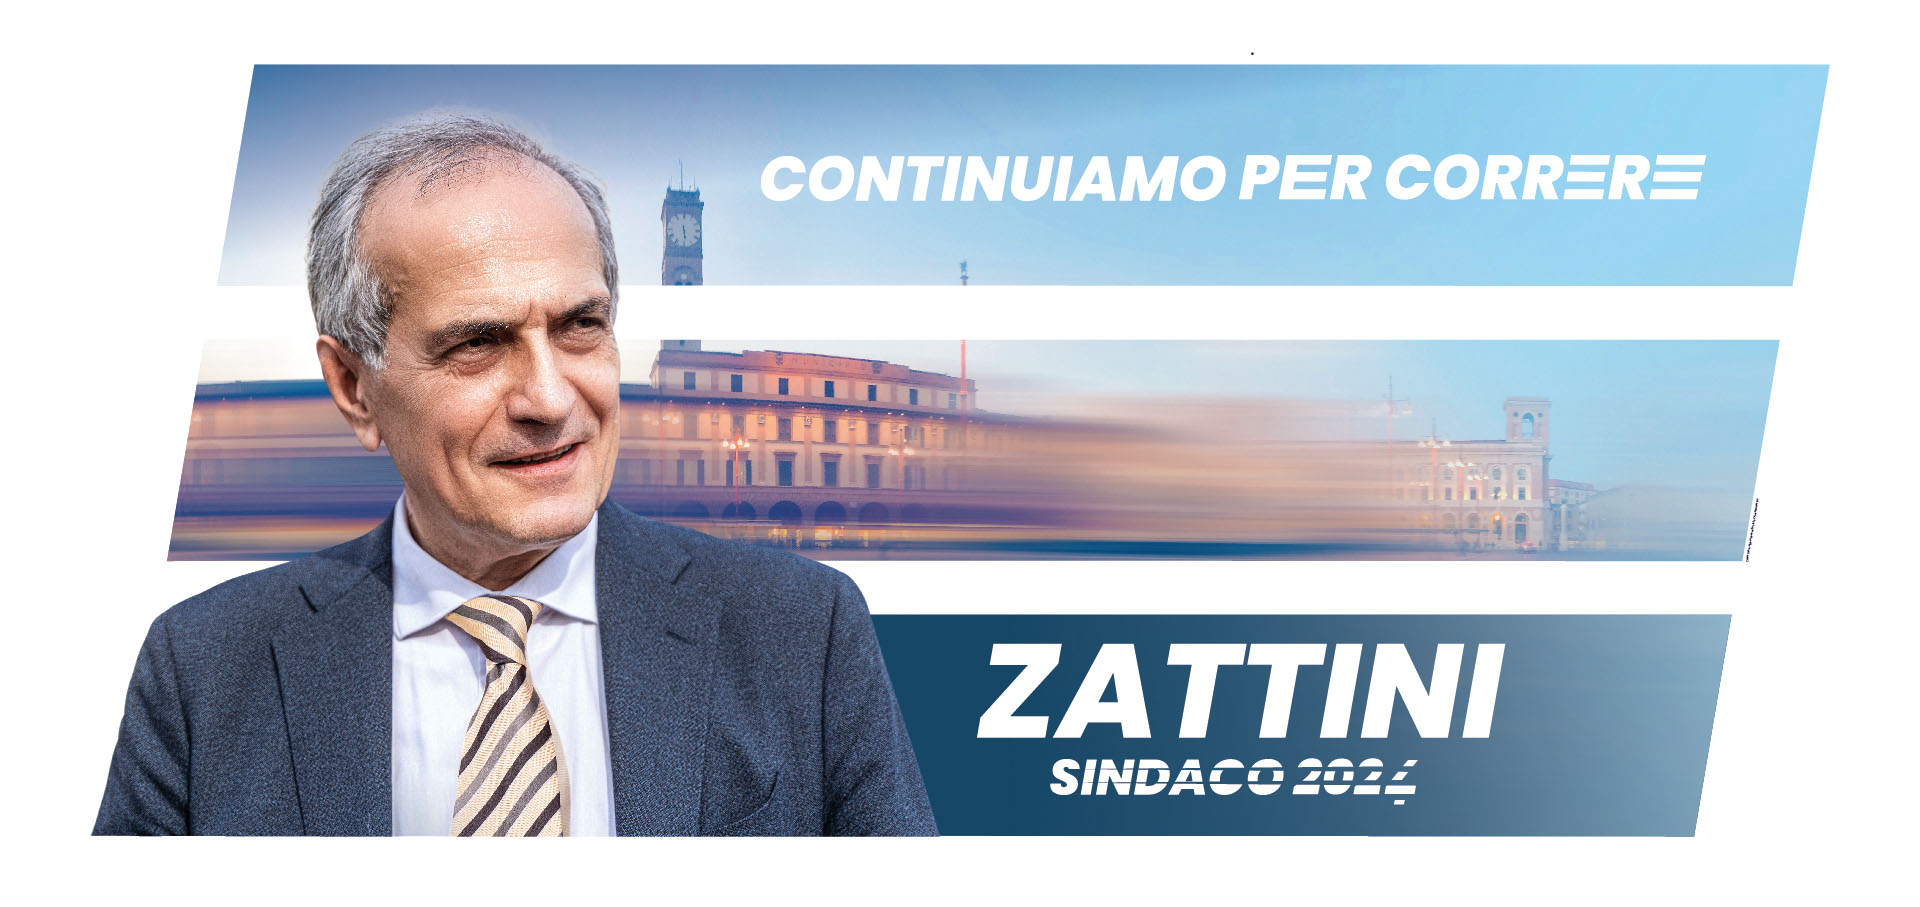 Campagna Continuiamo per Correre - Zattini Sindaco 2024